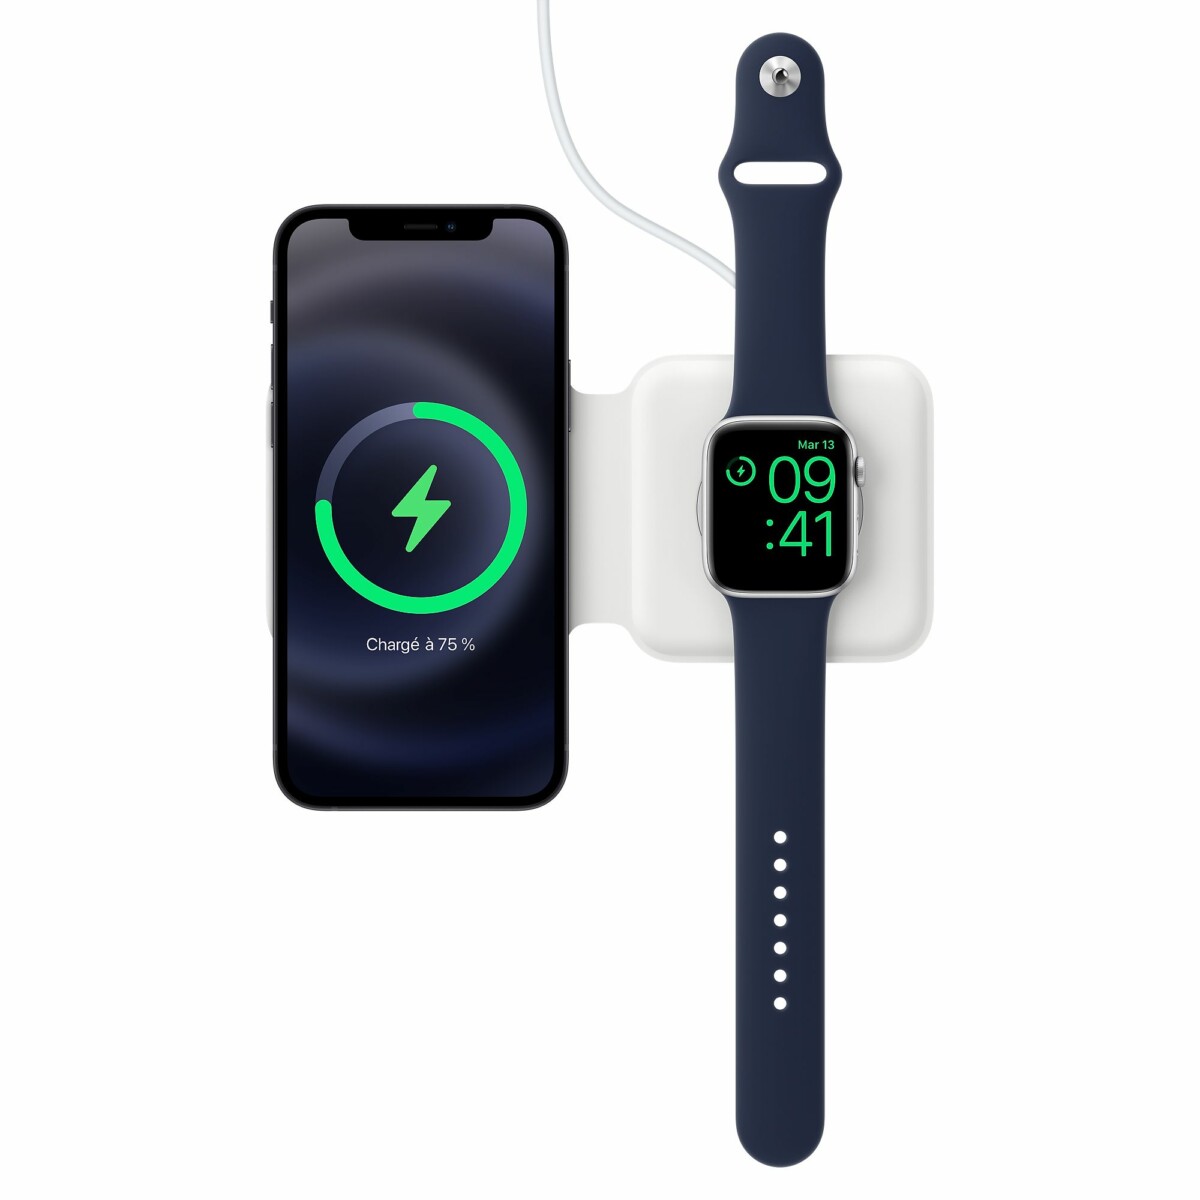 Le chargeur MagSafe Duo peut recharger un smartphone et une Apple Watch en même temps